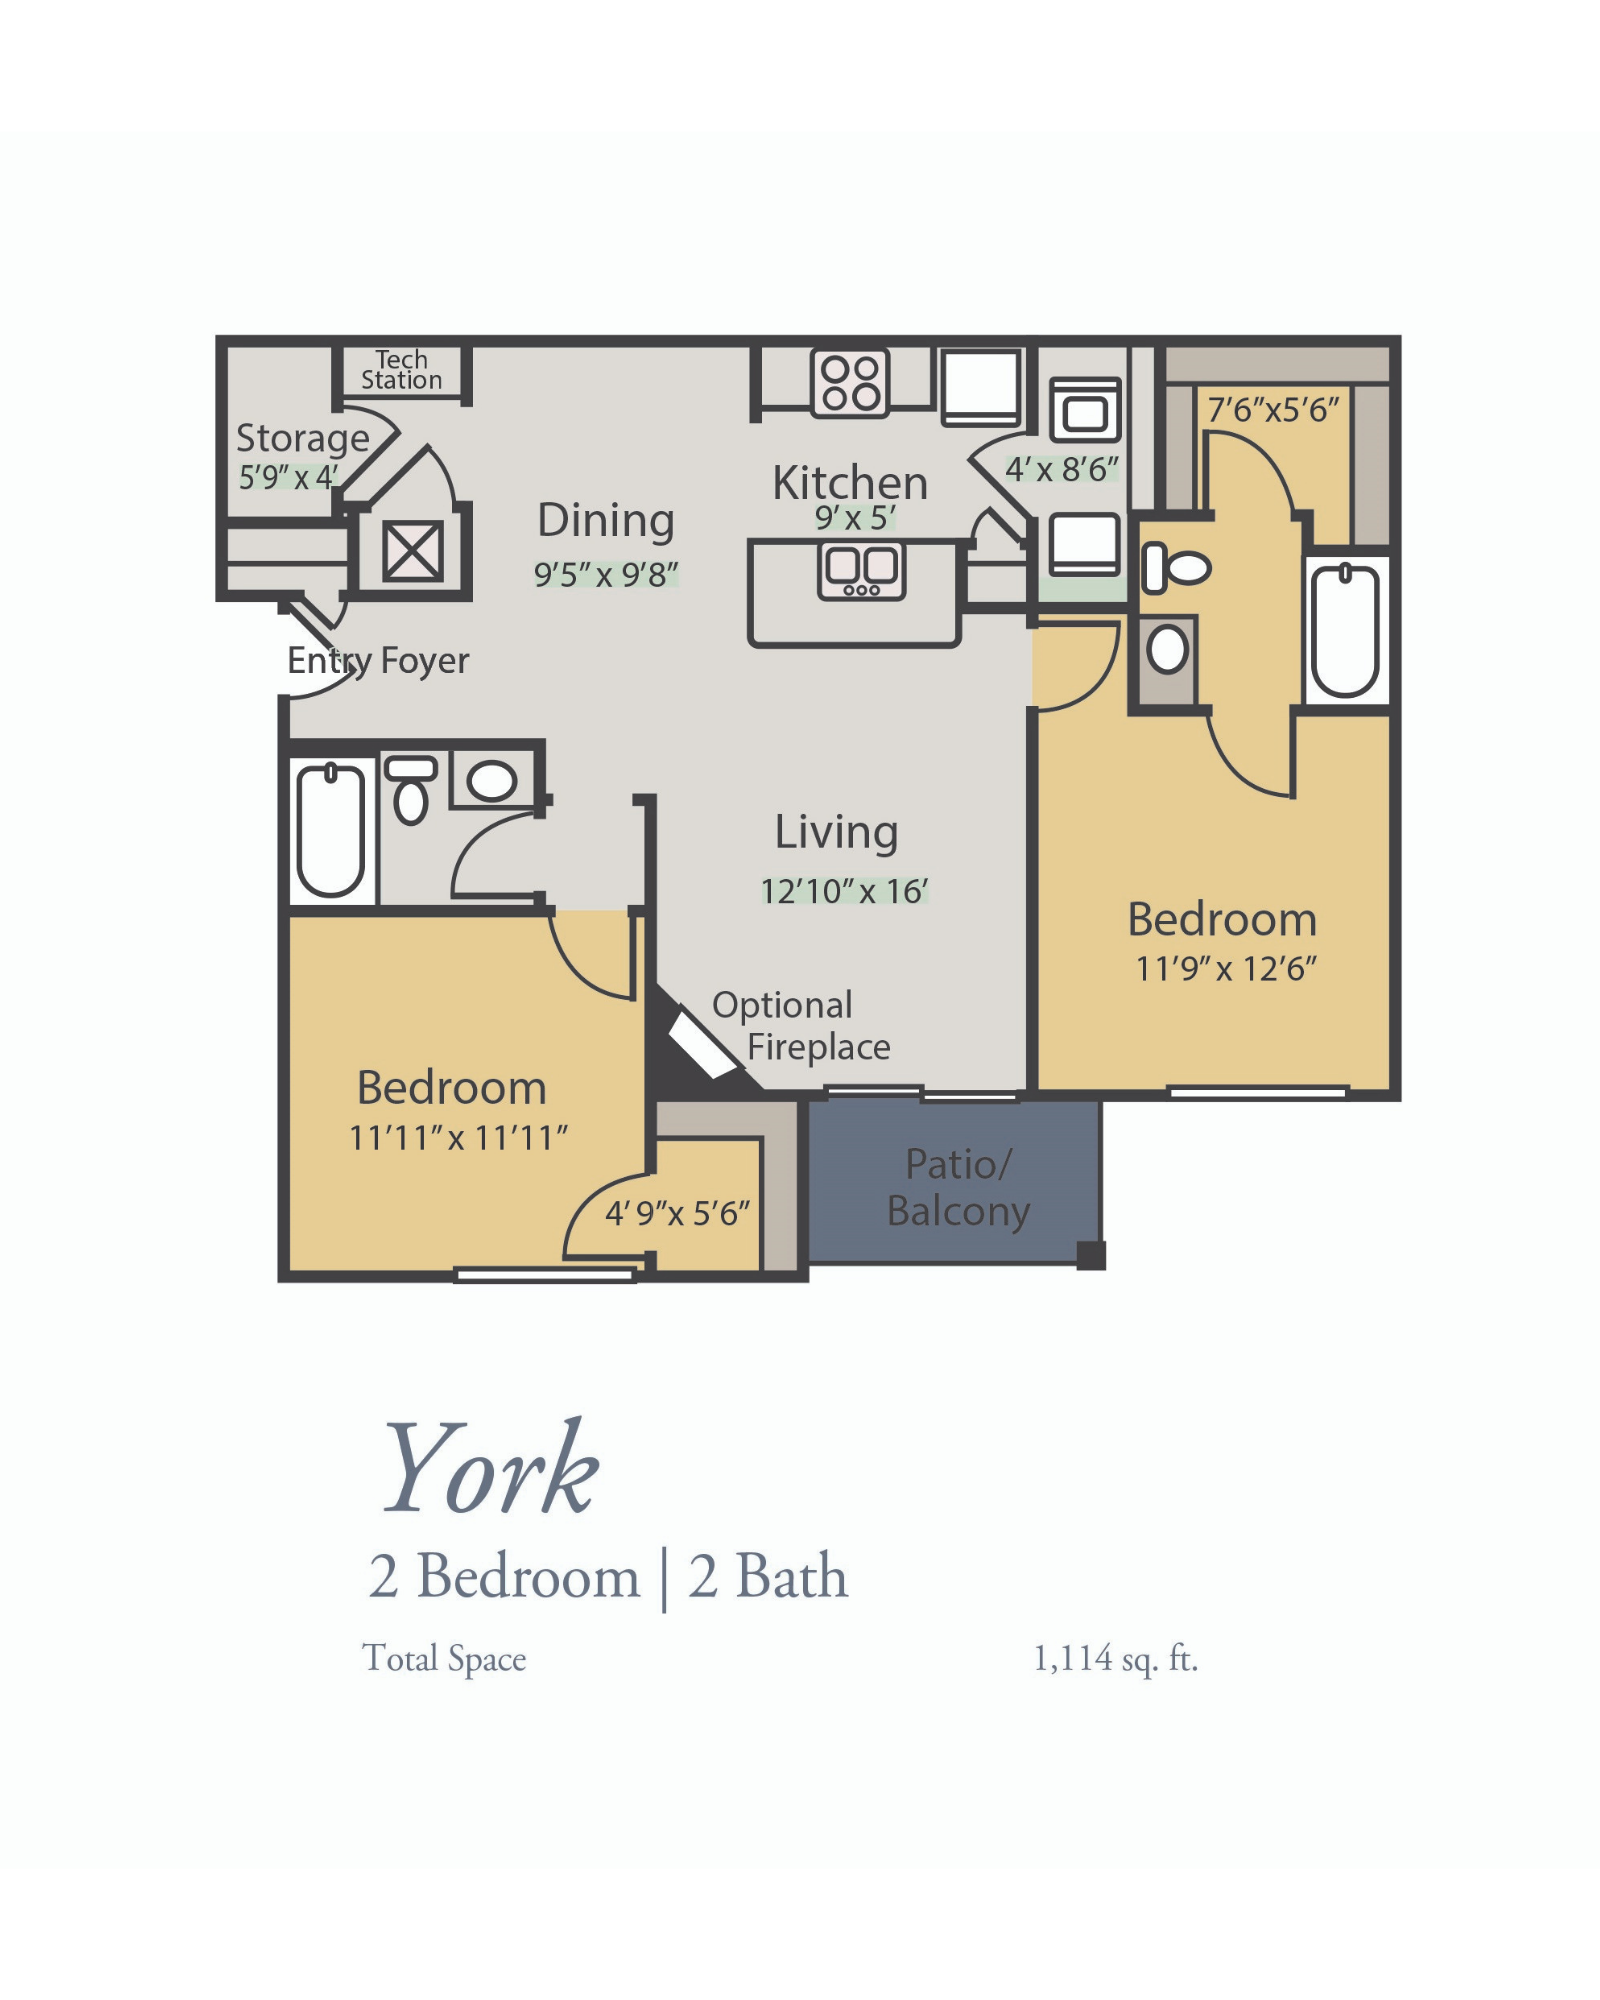 York Floor Plan, 2 Bedrooms, 2 Baths